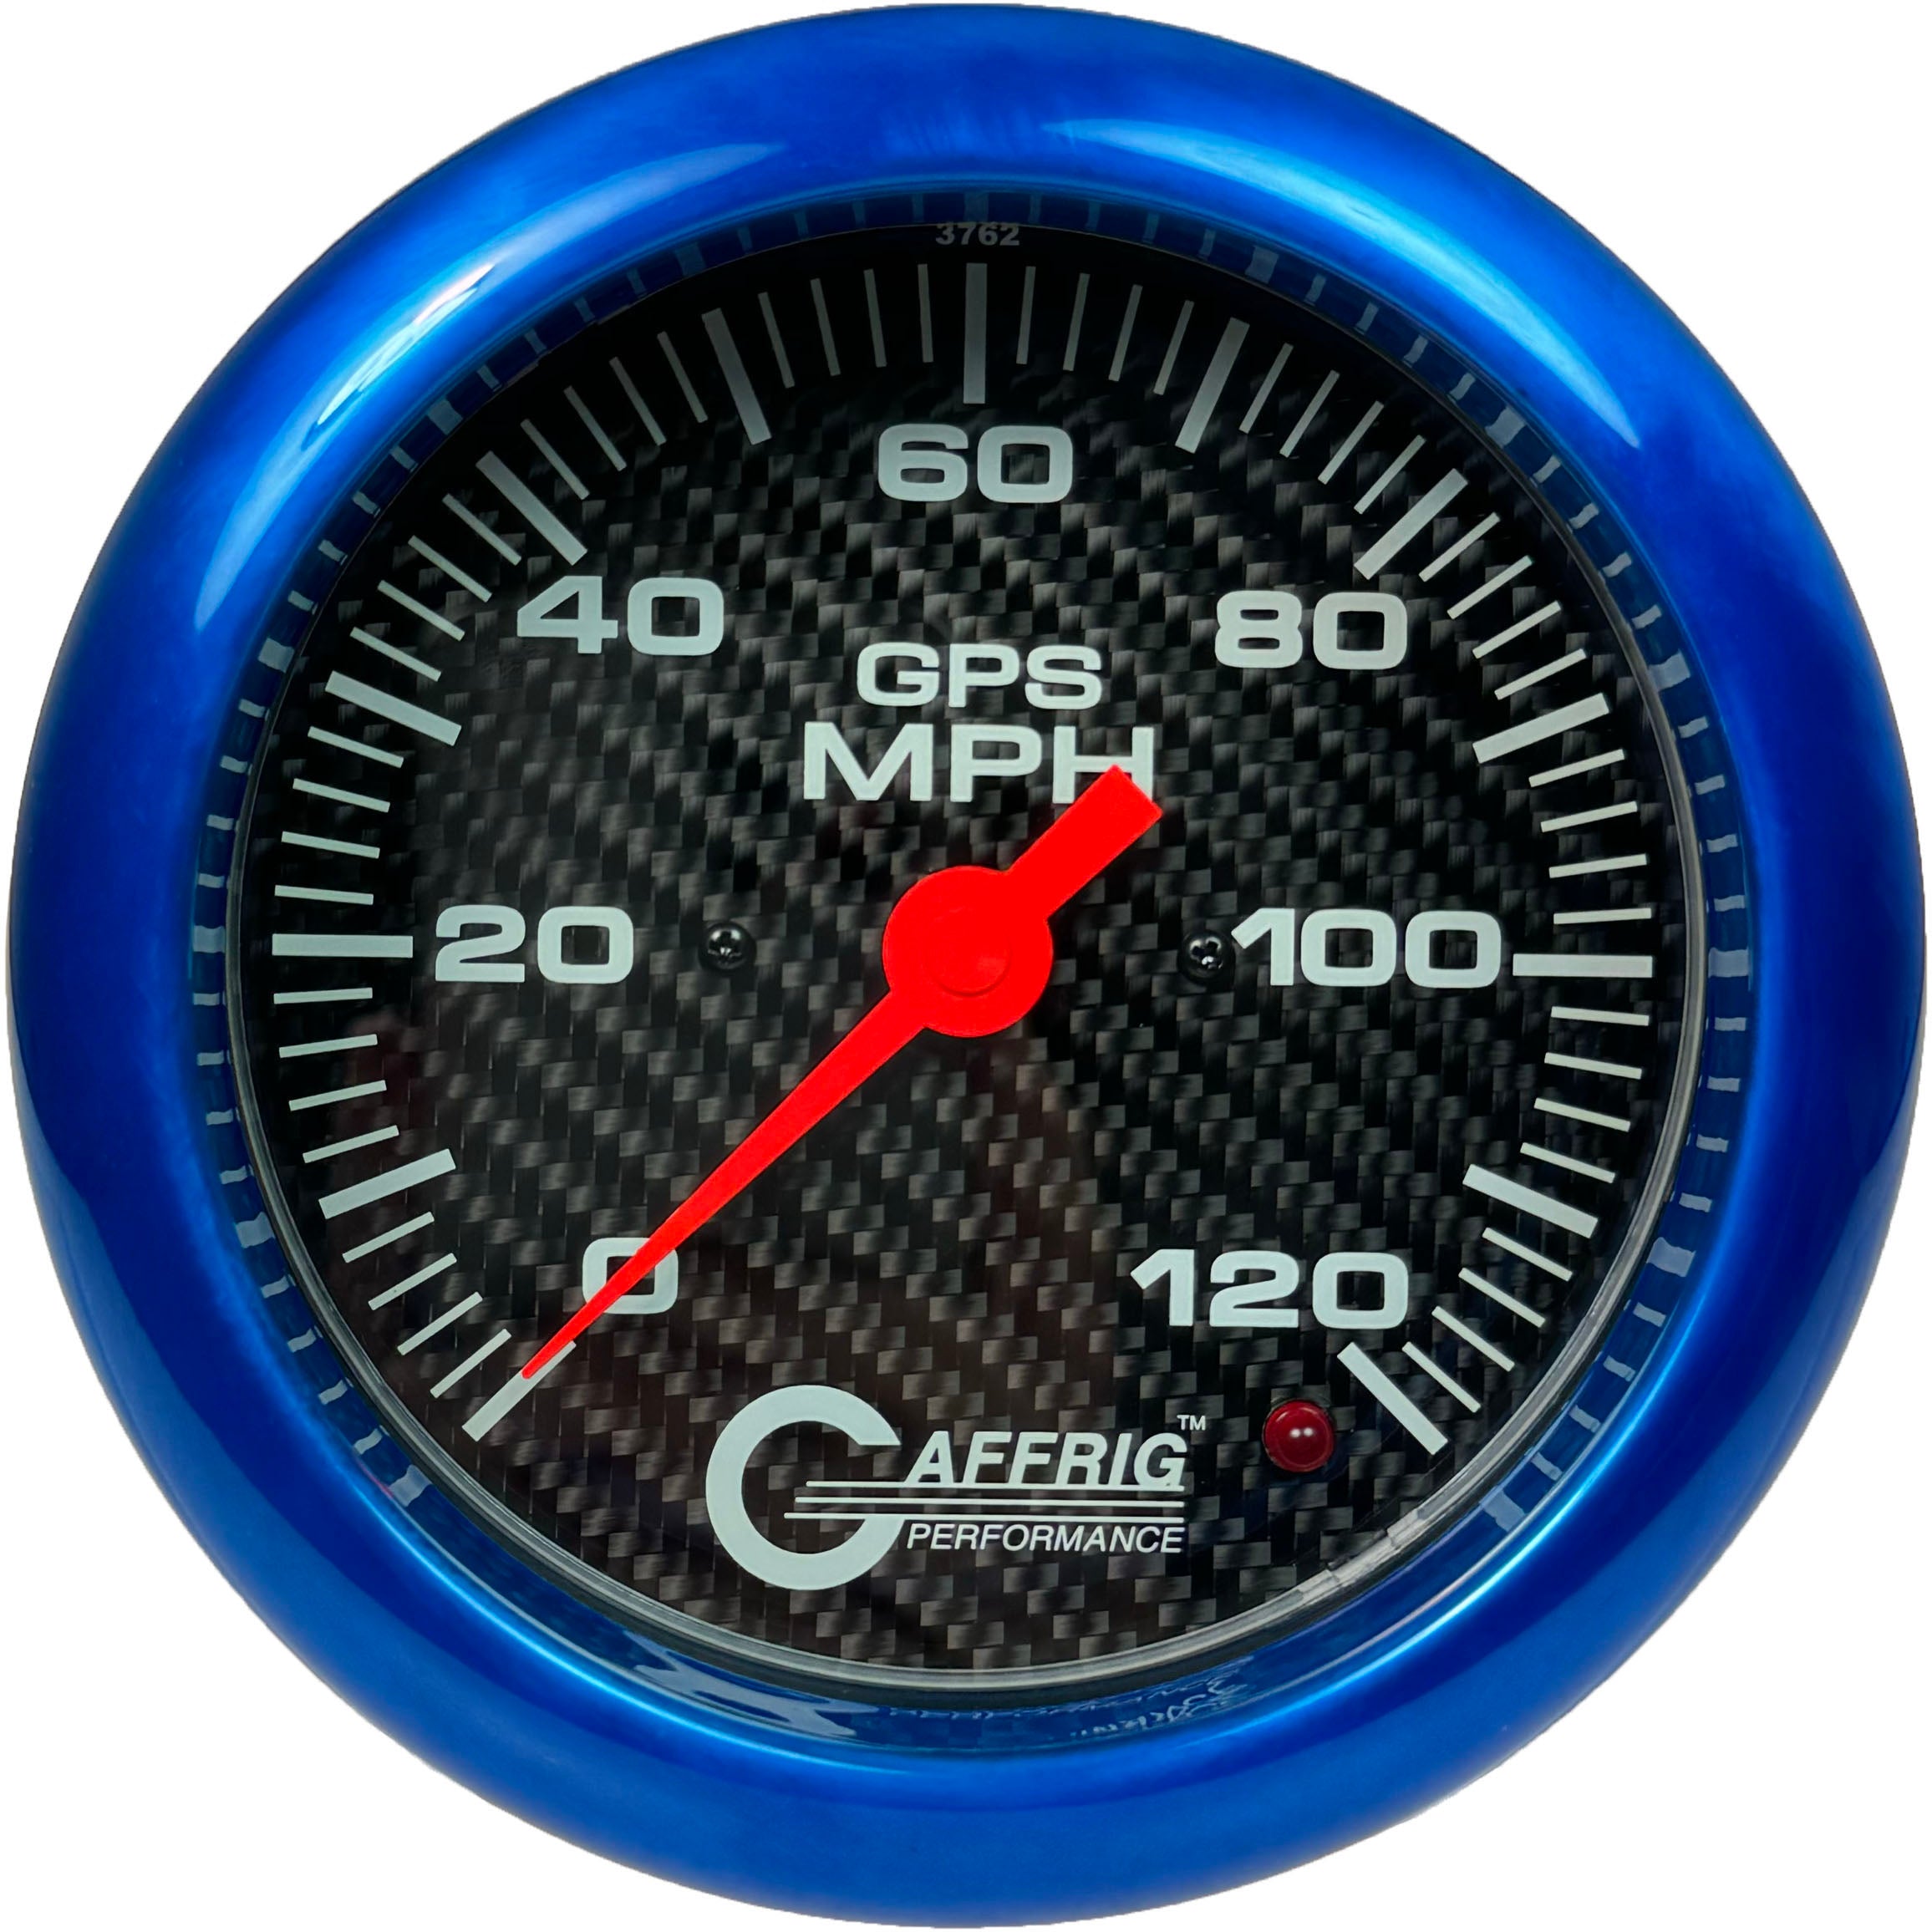 GAFFRIG PART #4050 4 5/8 INCH GPS ANALOG 120 MPH SPEEDOMETER GAUGE KIT CARBON FIBER BLUE